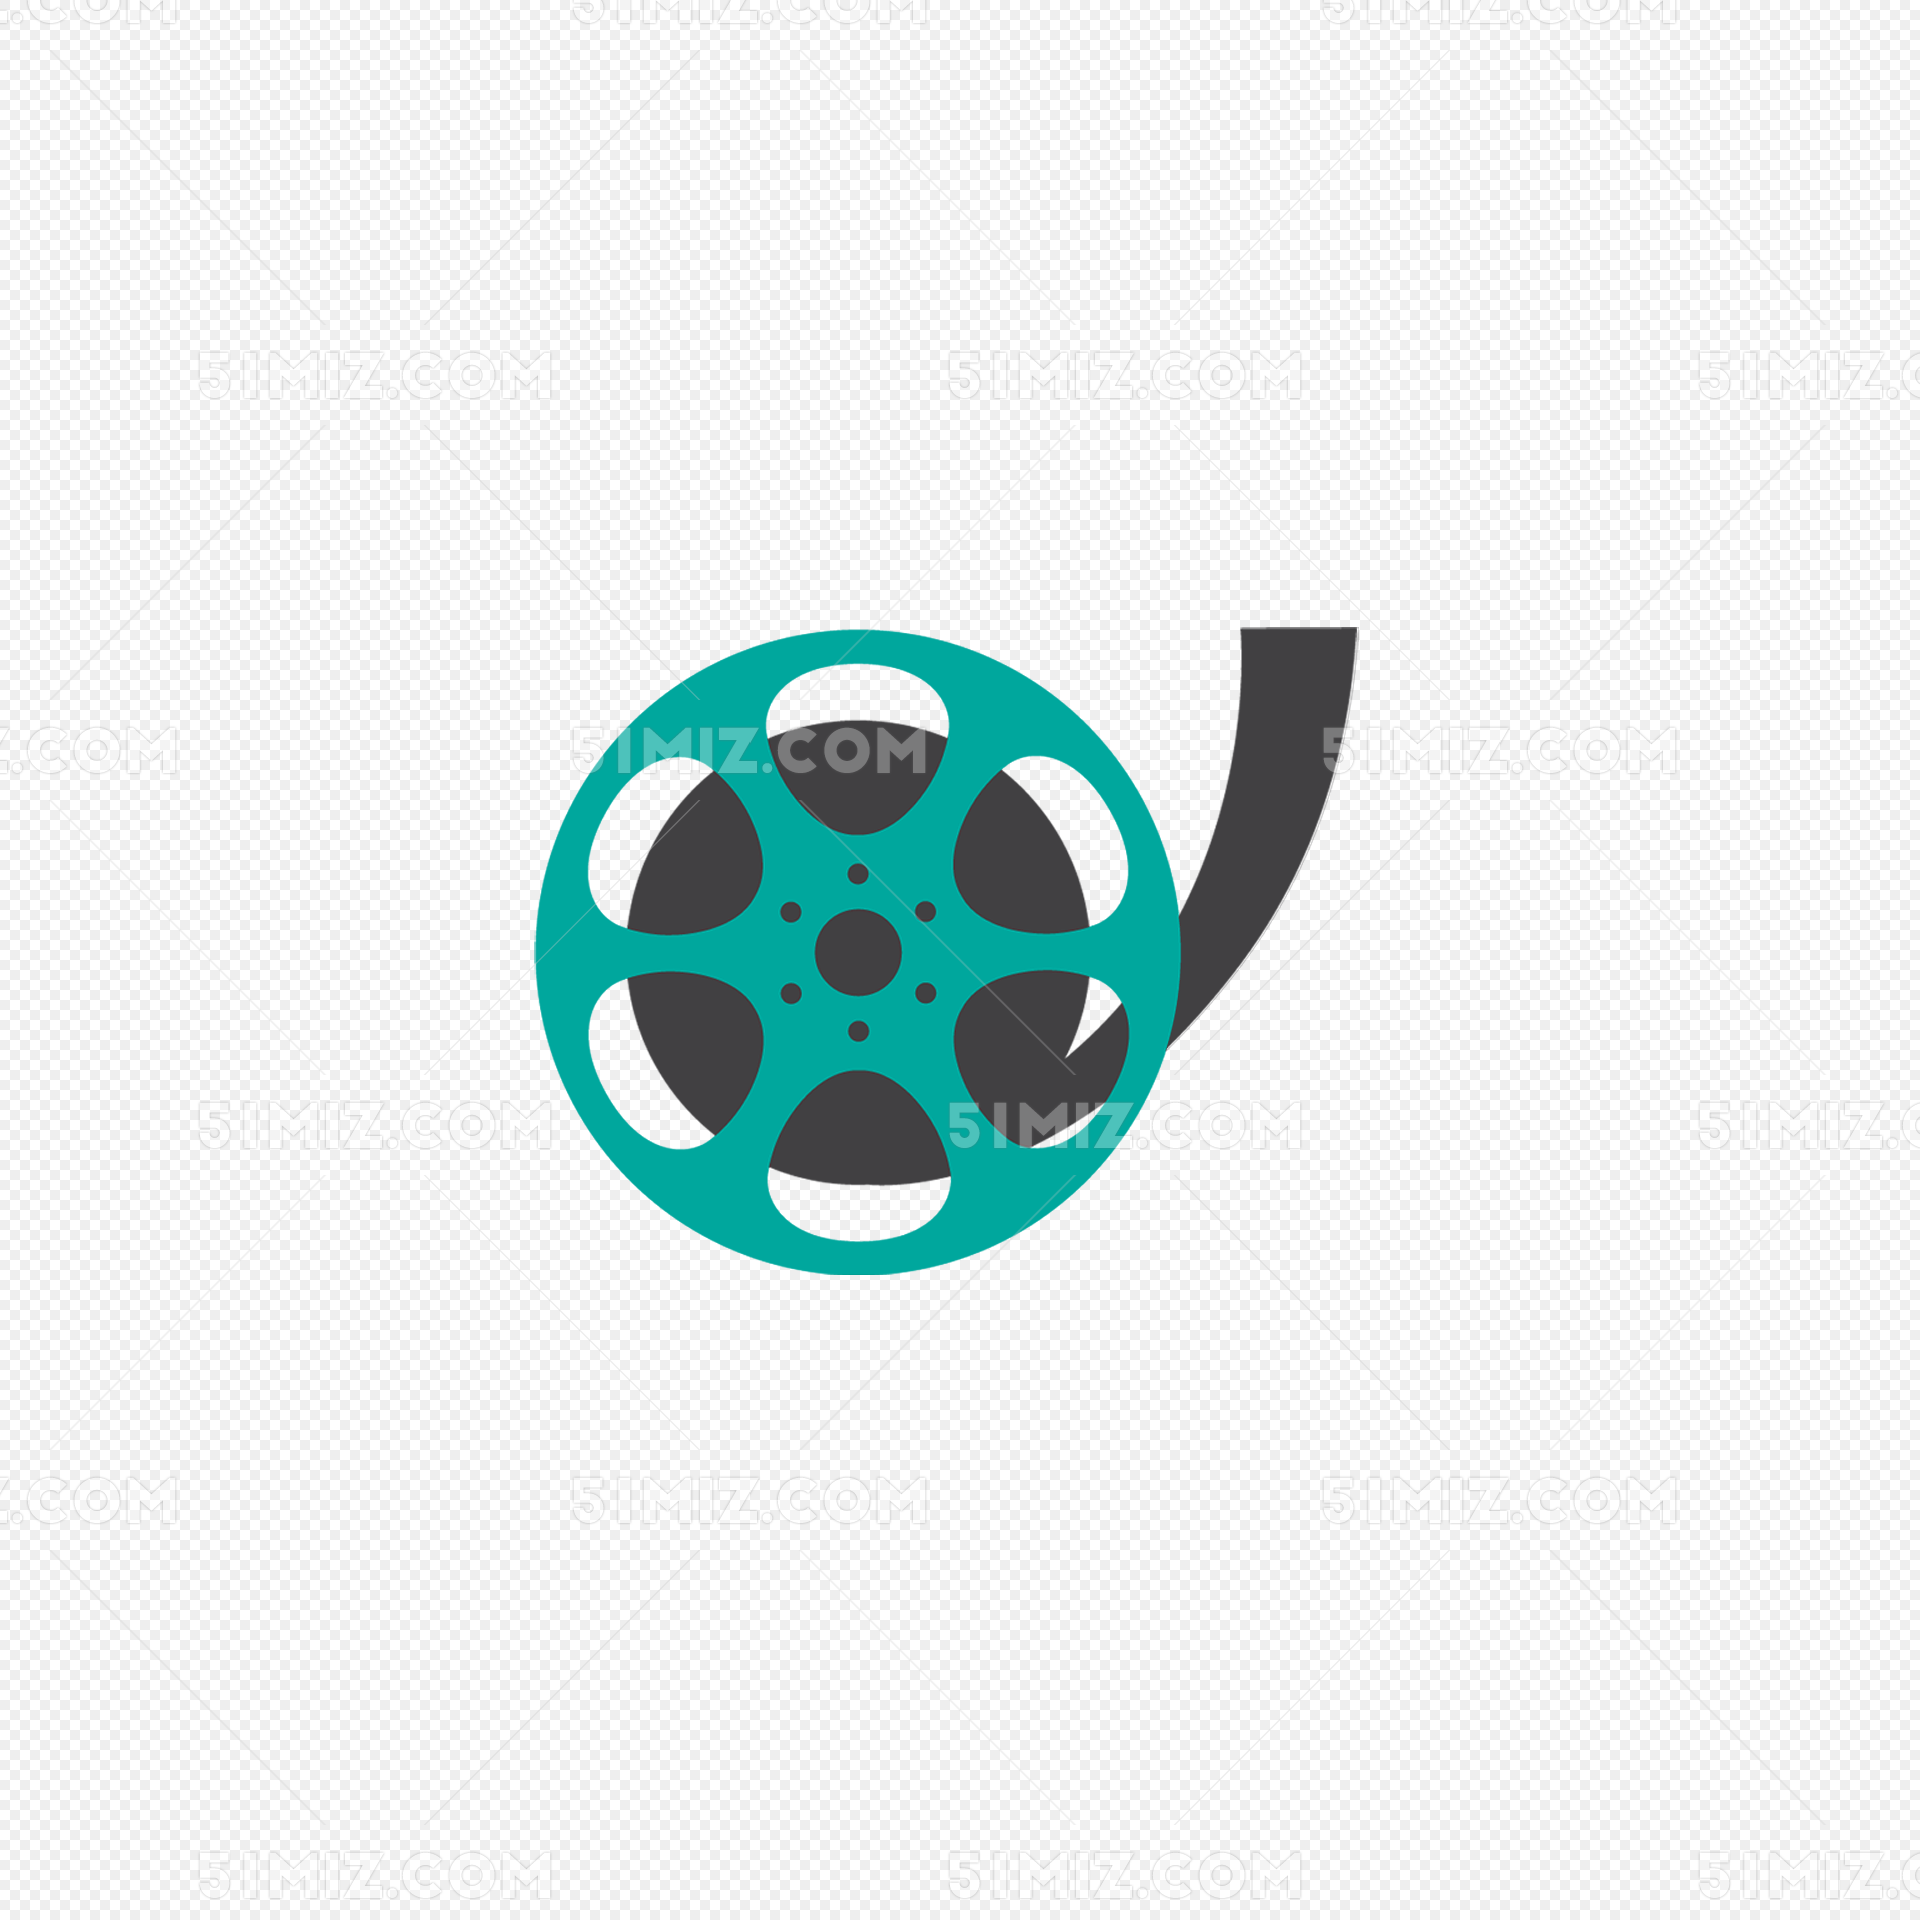 美国好莱坞logo-图库-五毛网